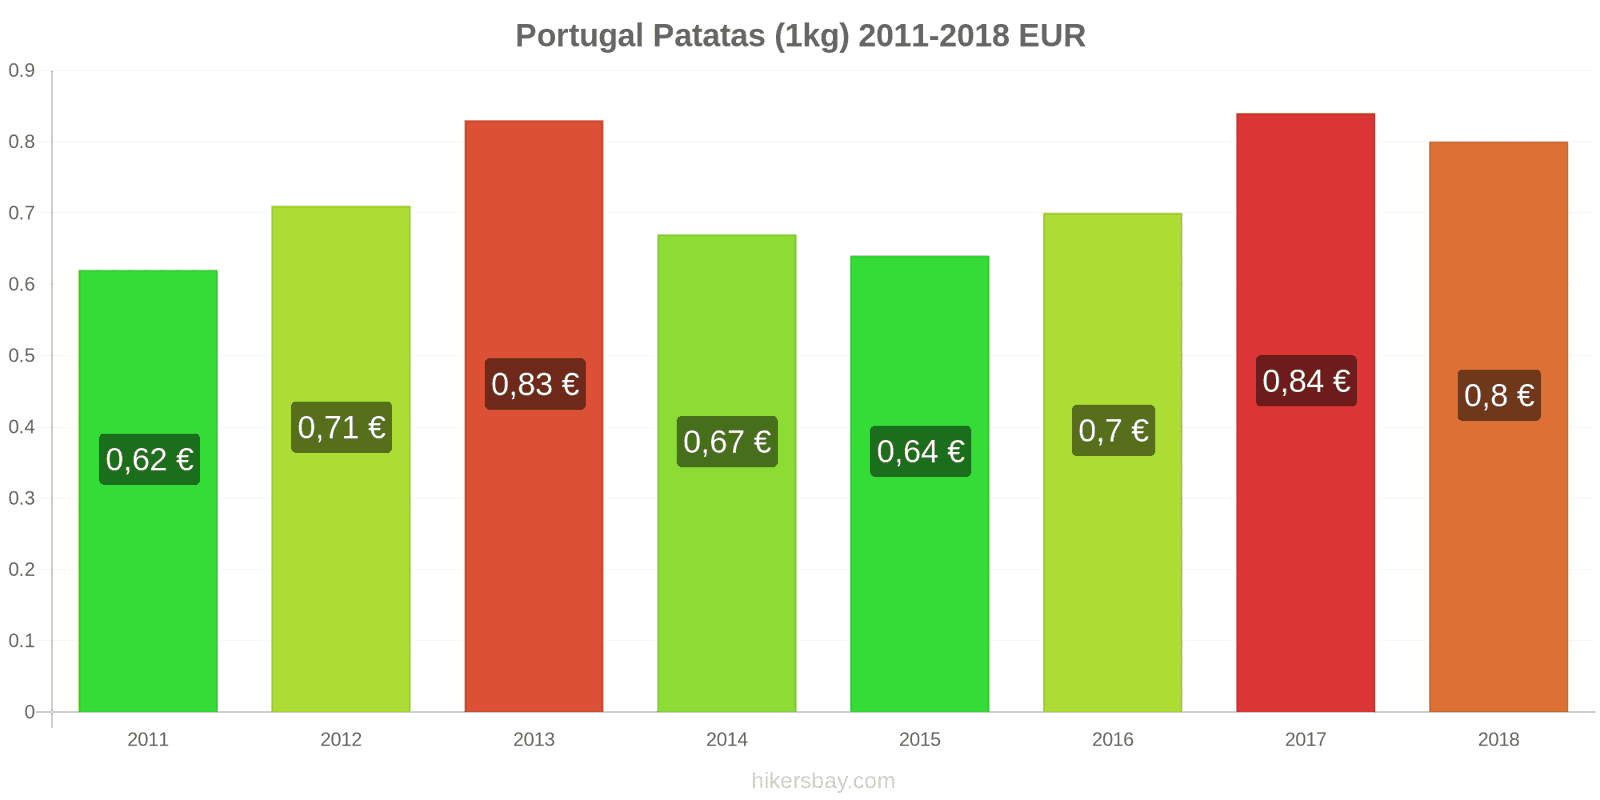 Portugal cambios de precios Patatas (1kg) hikersbay.com